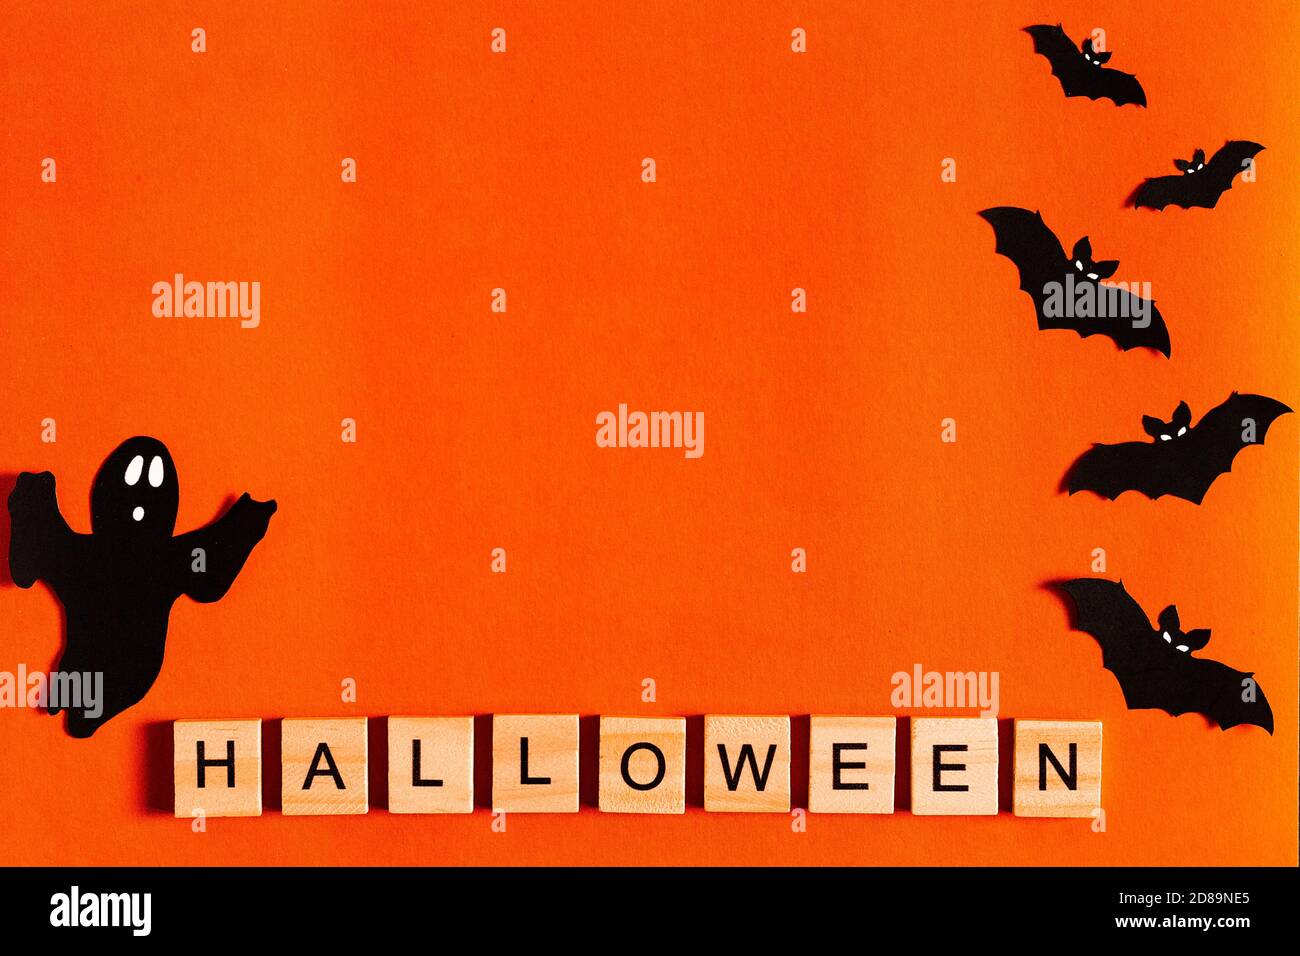 Scritta Halloween su sfondo arancione con silhouette di carta nera, pipistrelli, zucca, ragno. Il concetto di Halloween. La vista dall'alto Foto Stock